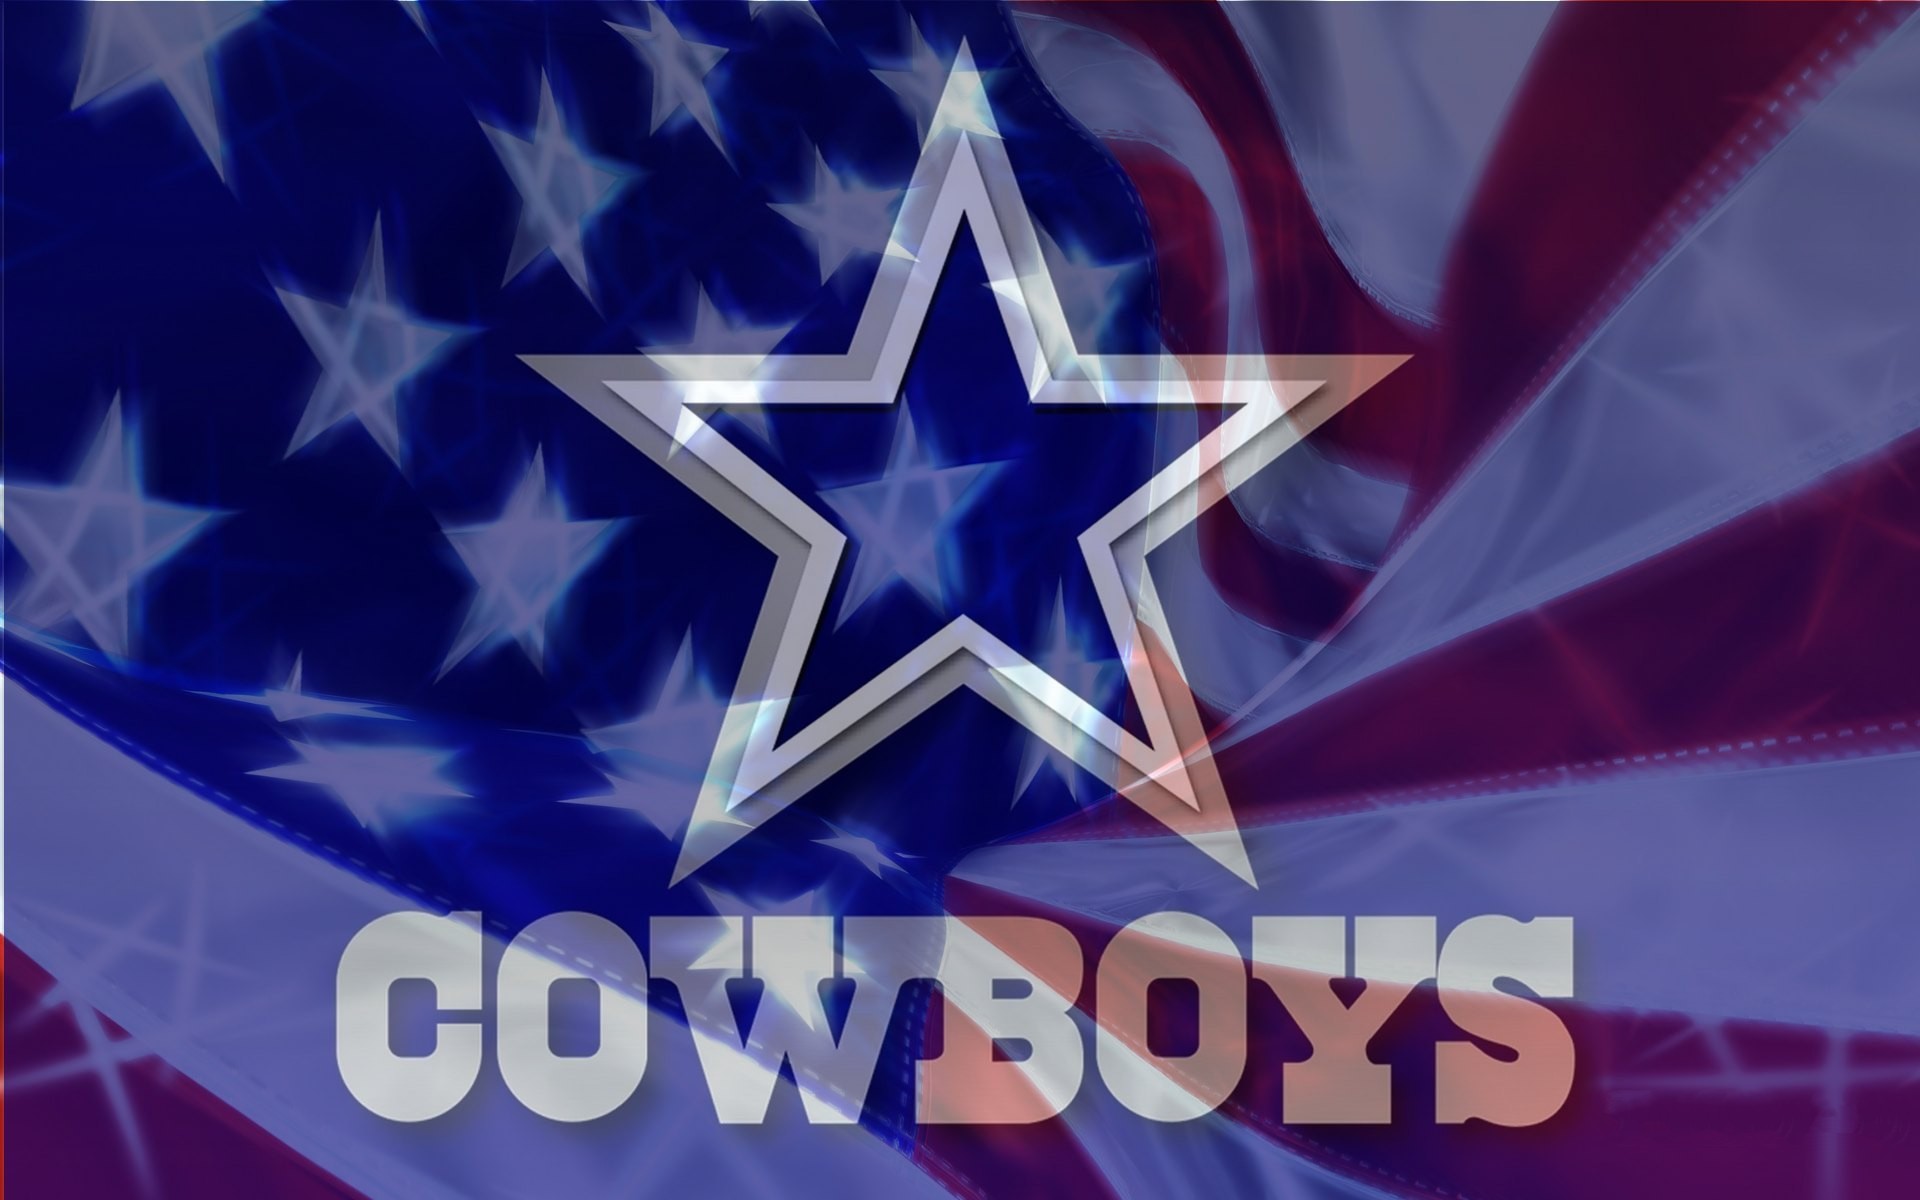 Dallas cowboys cheerleaders desktop wallpaper